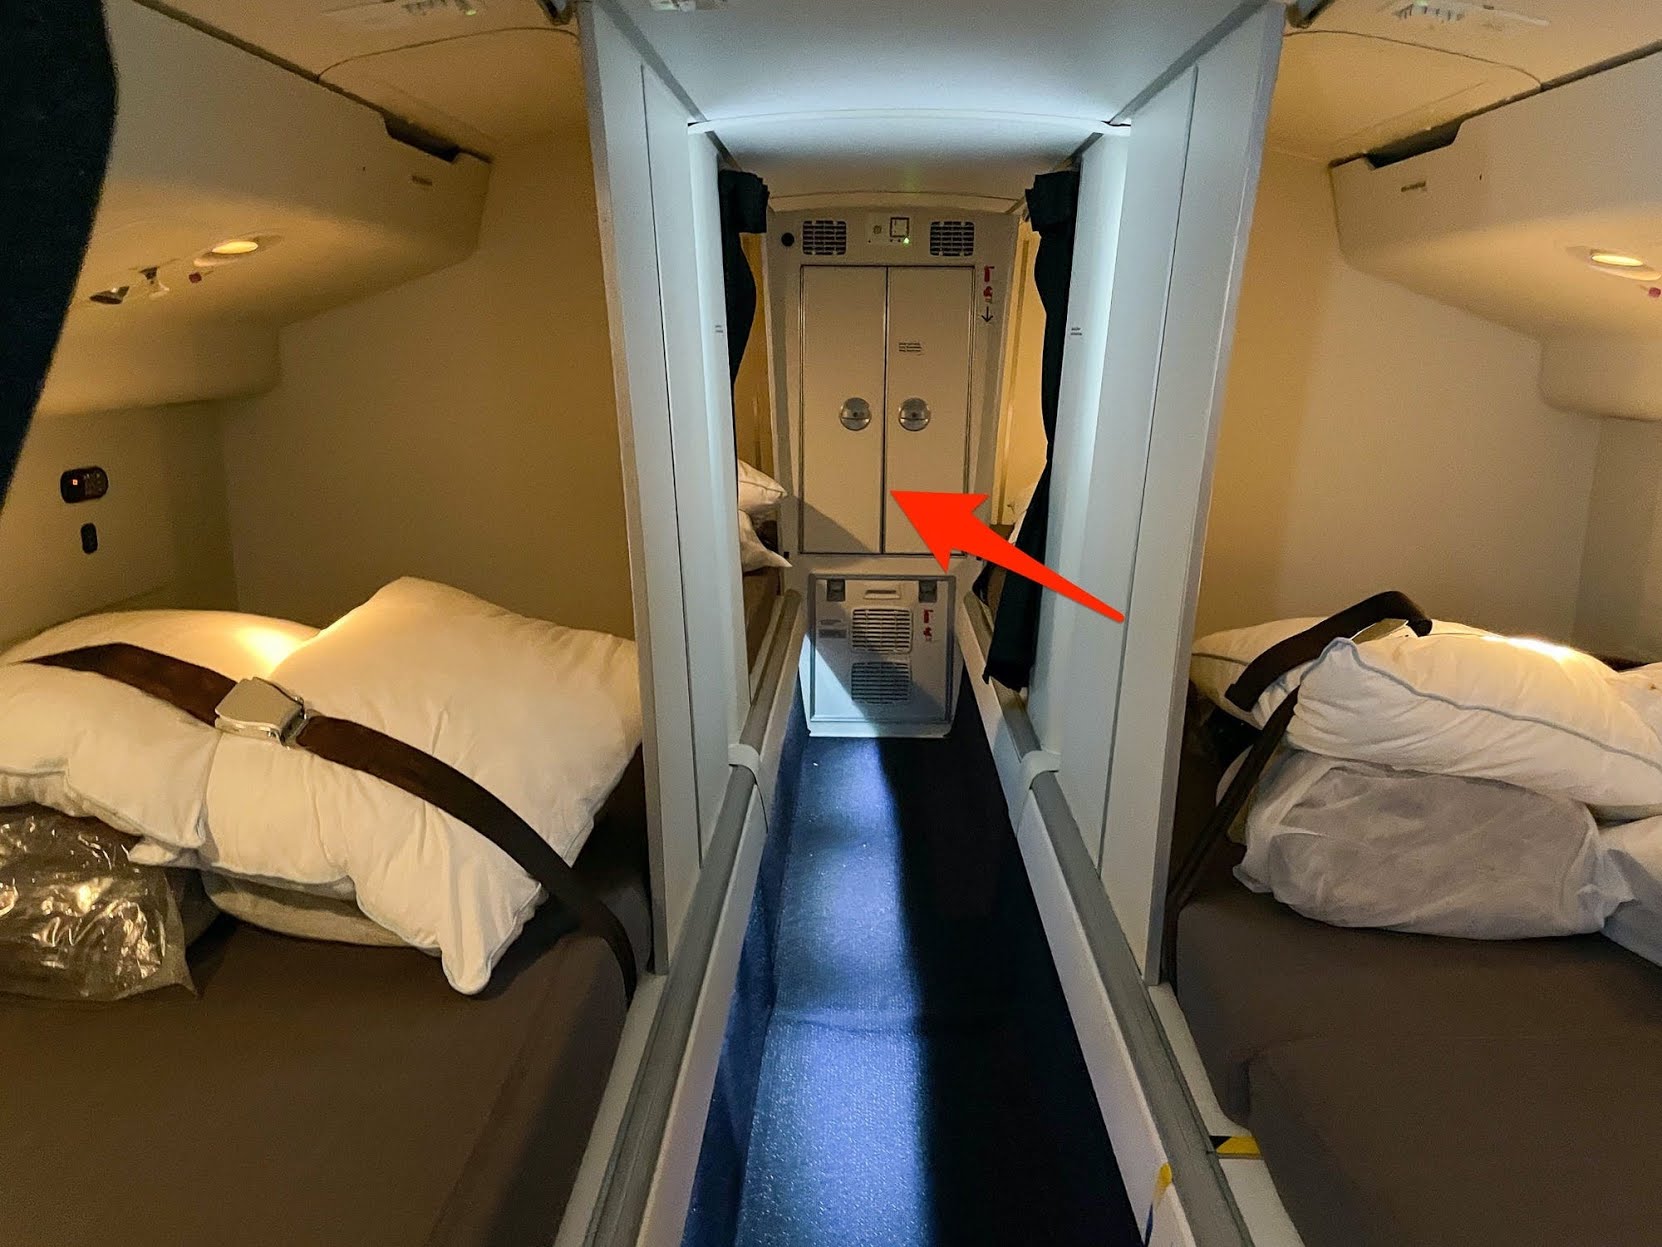 Khám phá chỗ ngủ của phi công và tiếp viên hàng không trên máy bay - Ảnh 12.